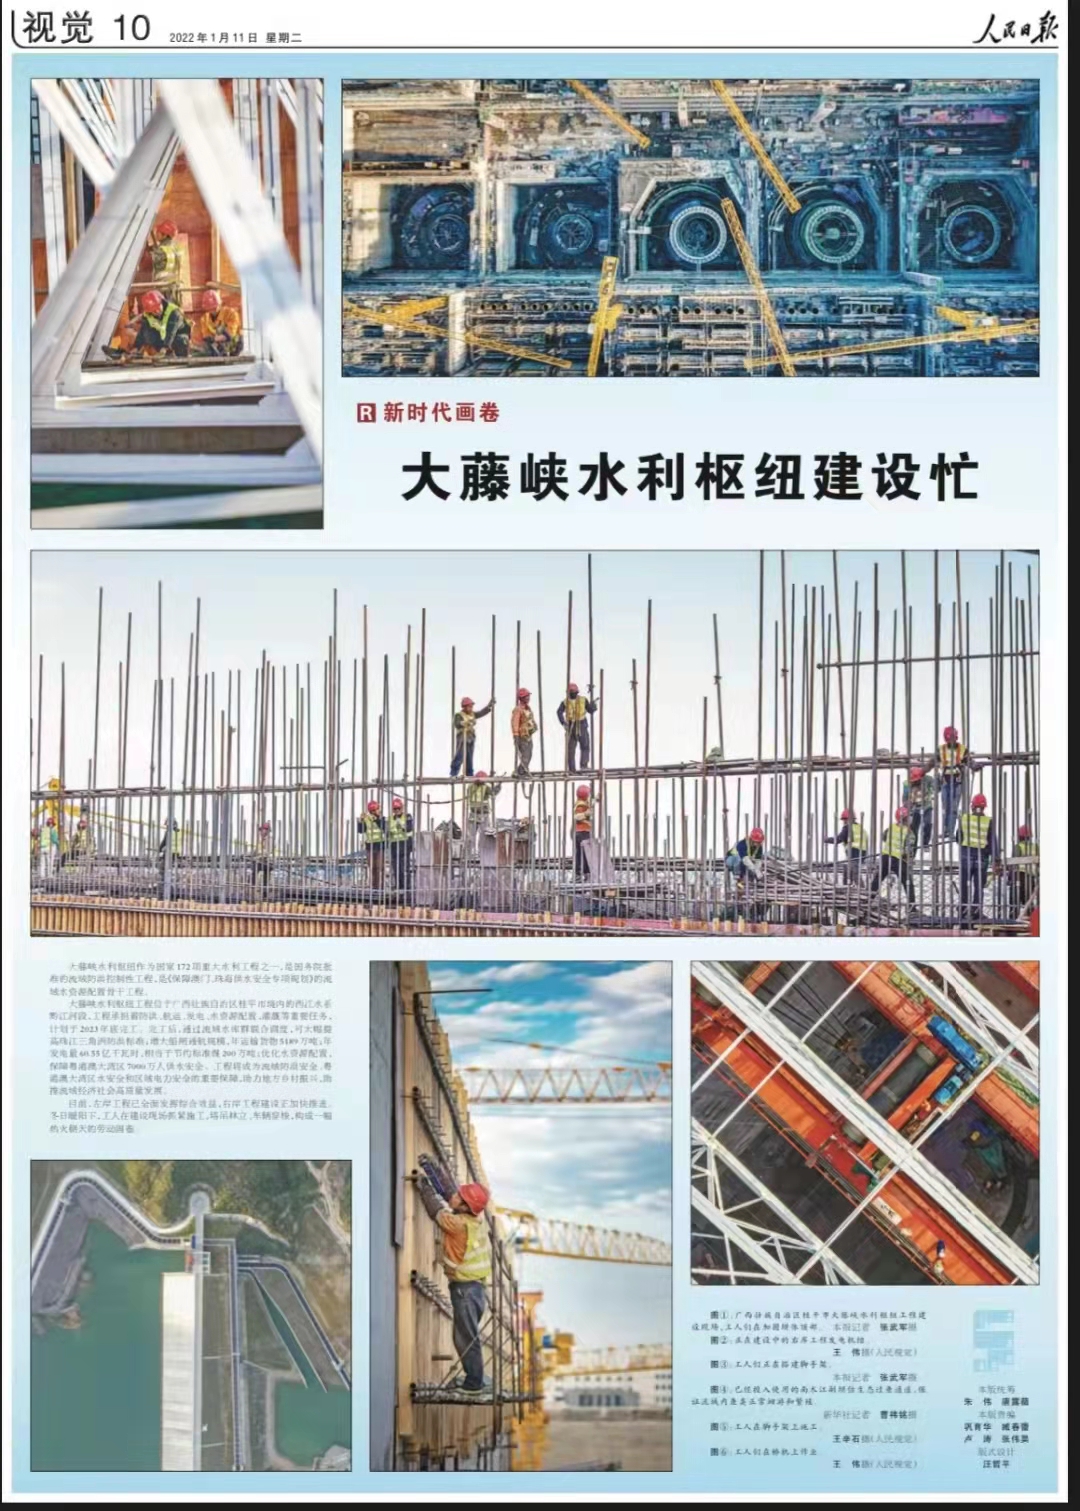 《人民日报》首次整版报道大藤峡水利枢纽建设